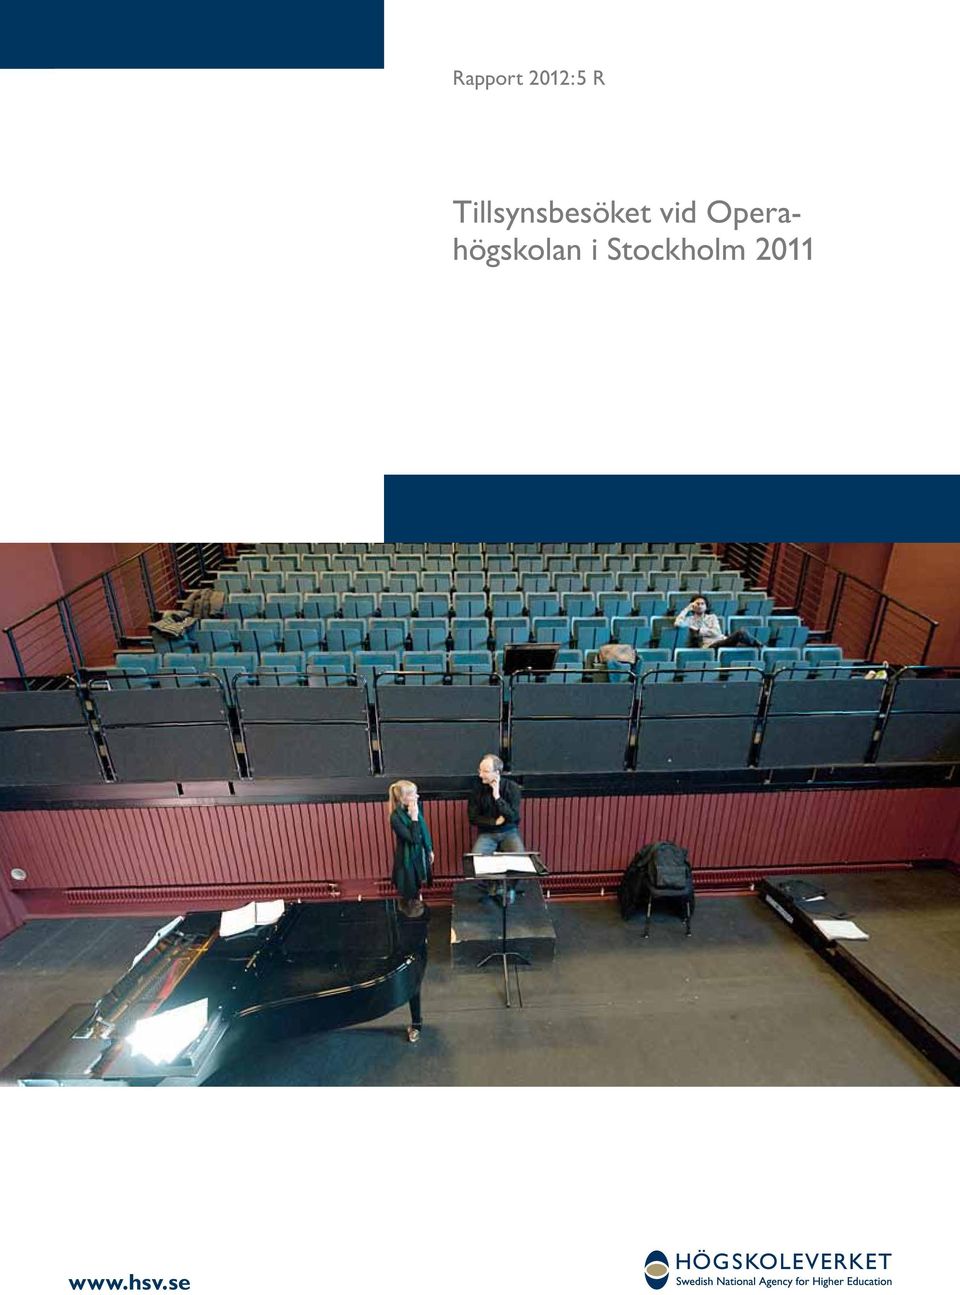 Operahögskolan i